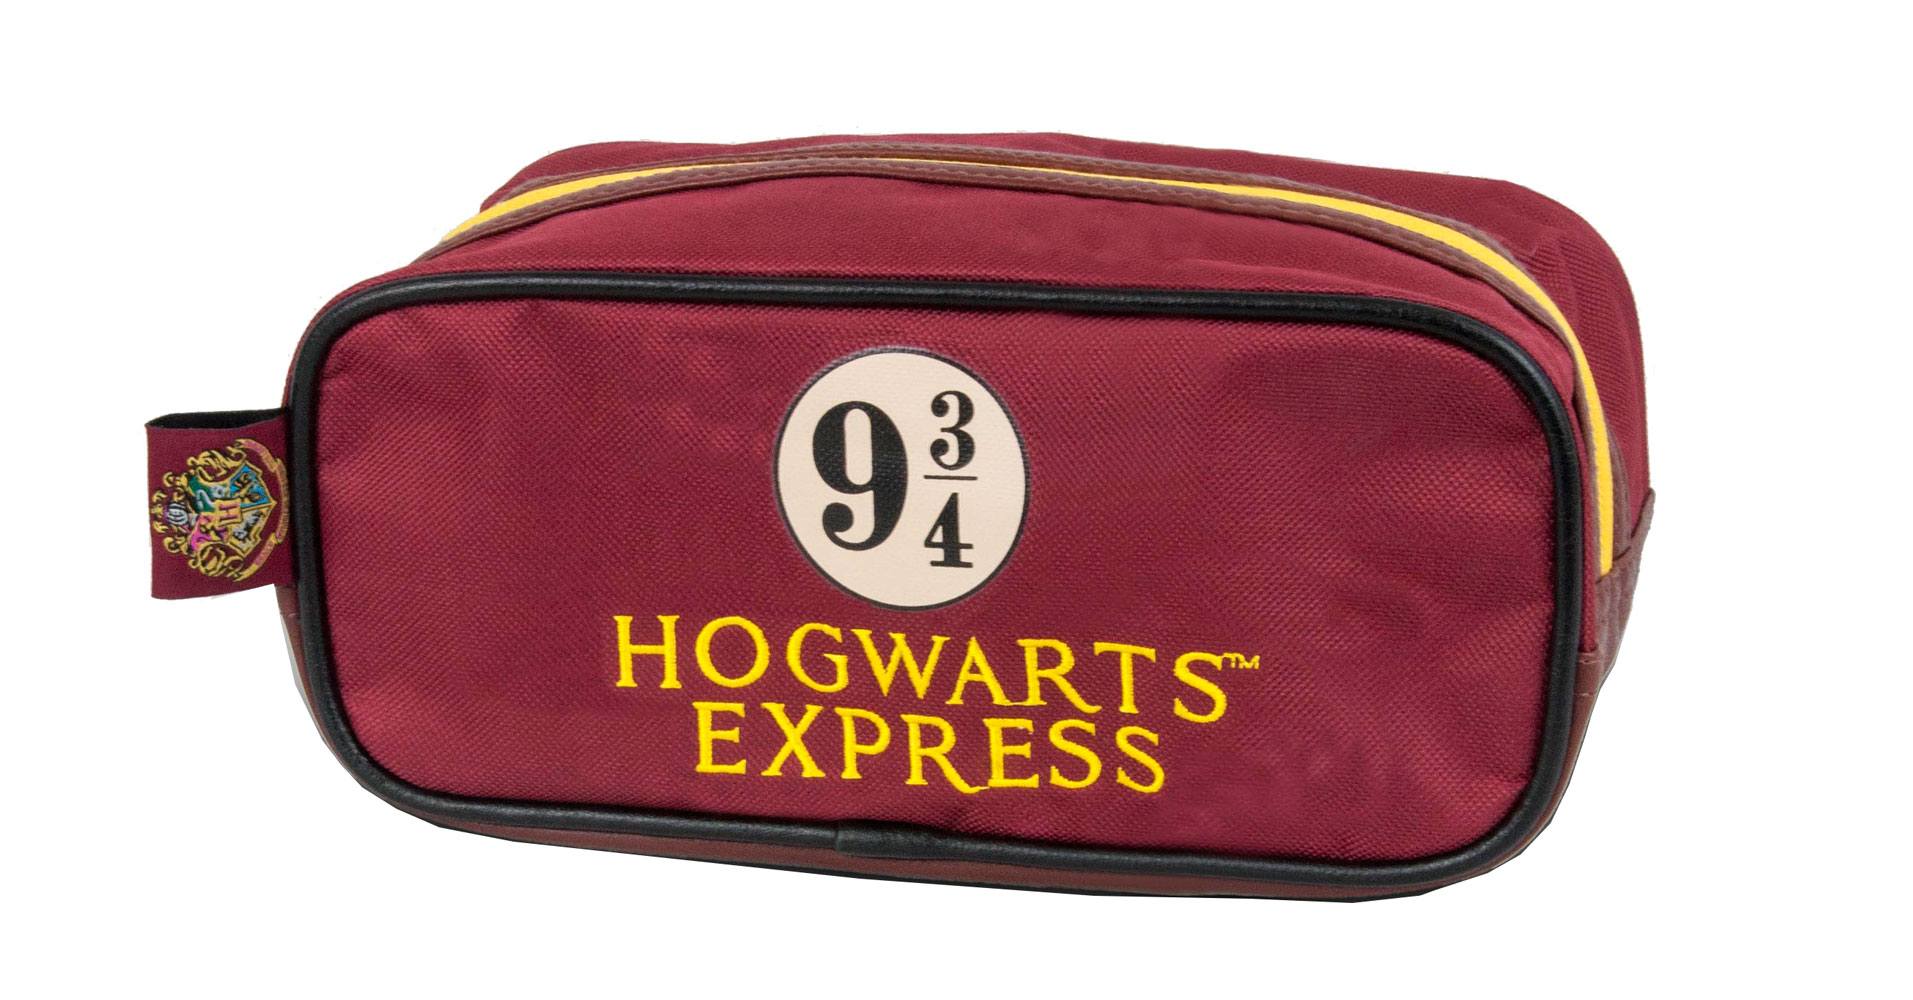 Harry Potter Wash Bag Hogwarts Express 9 3/4